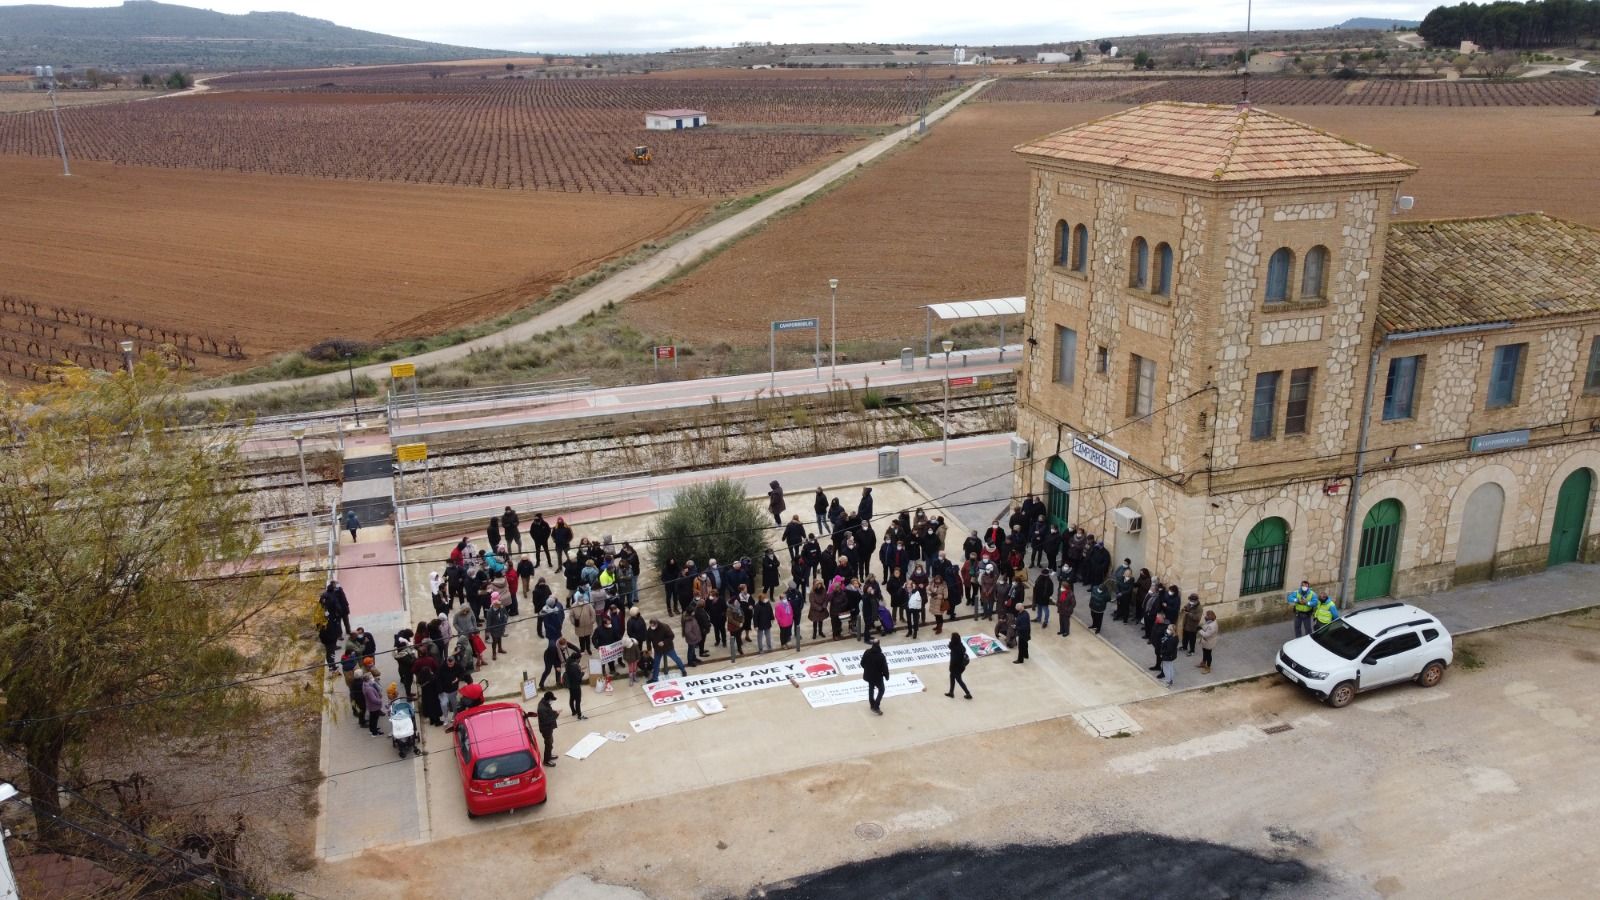 Protesta en Camporrobles por el cierre de la línea ferroviaria Utiel-Cuenca